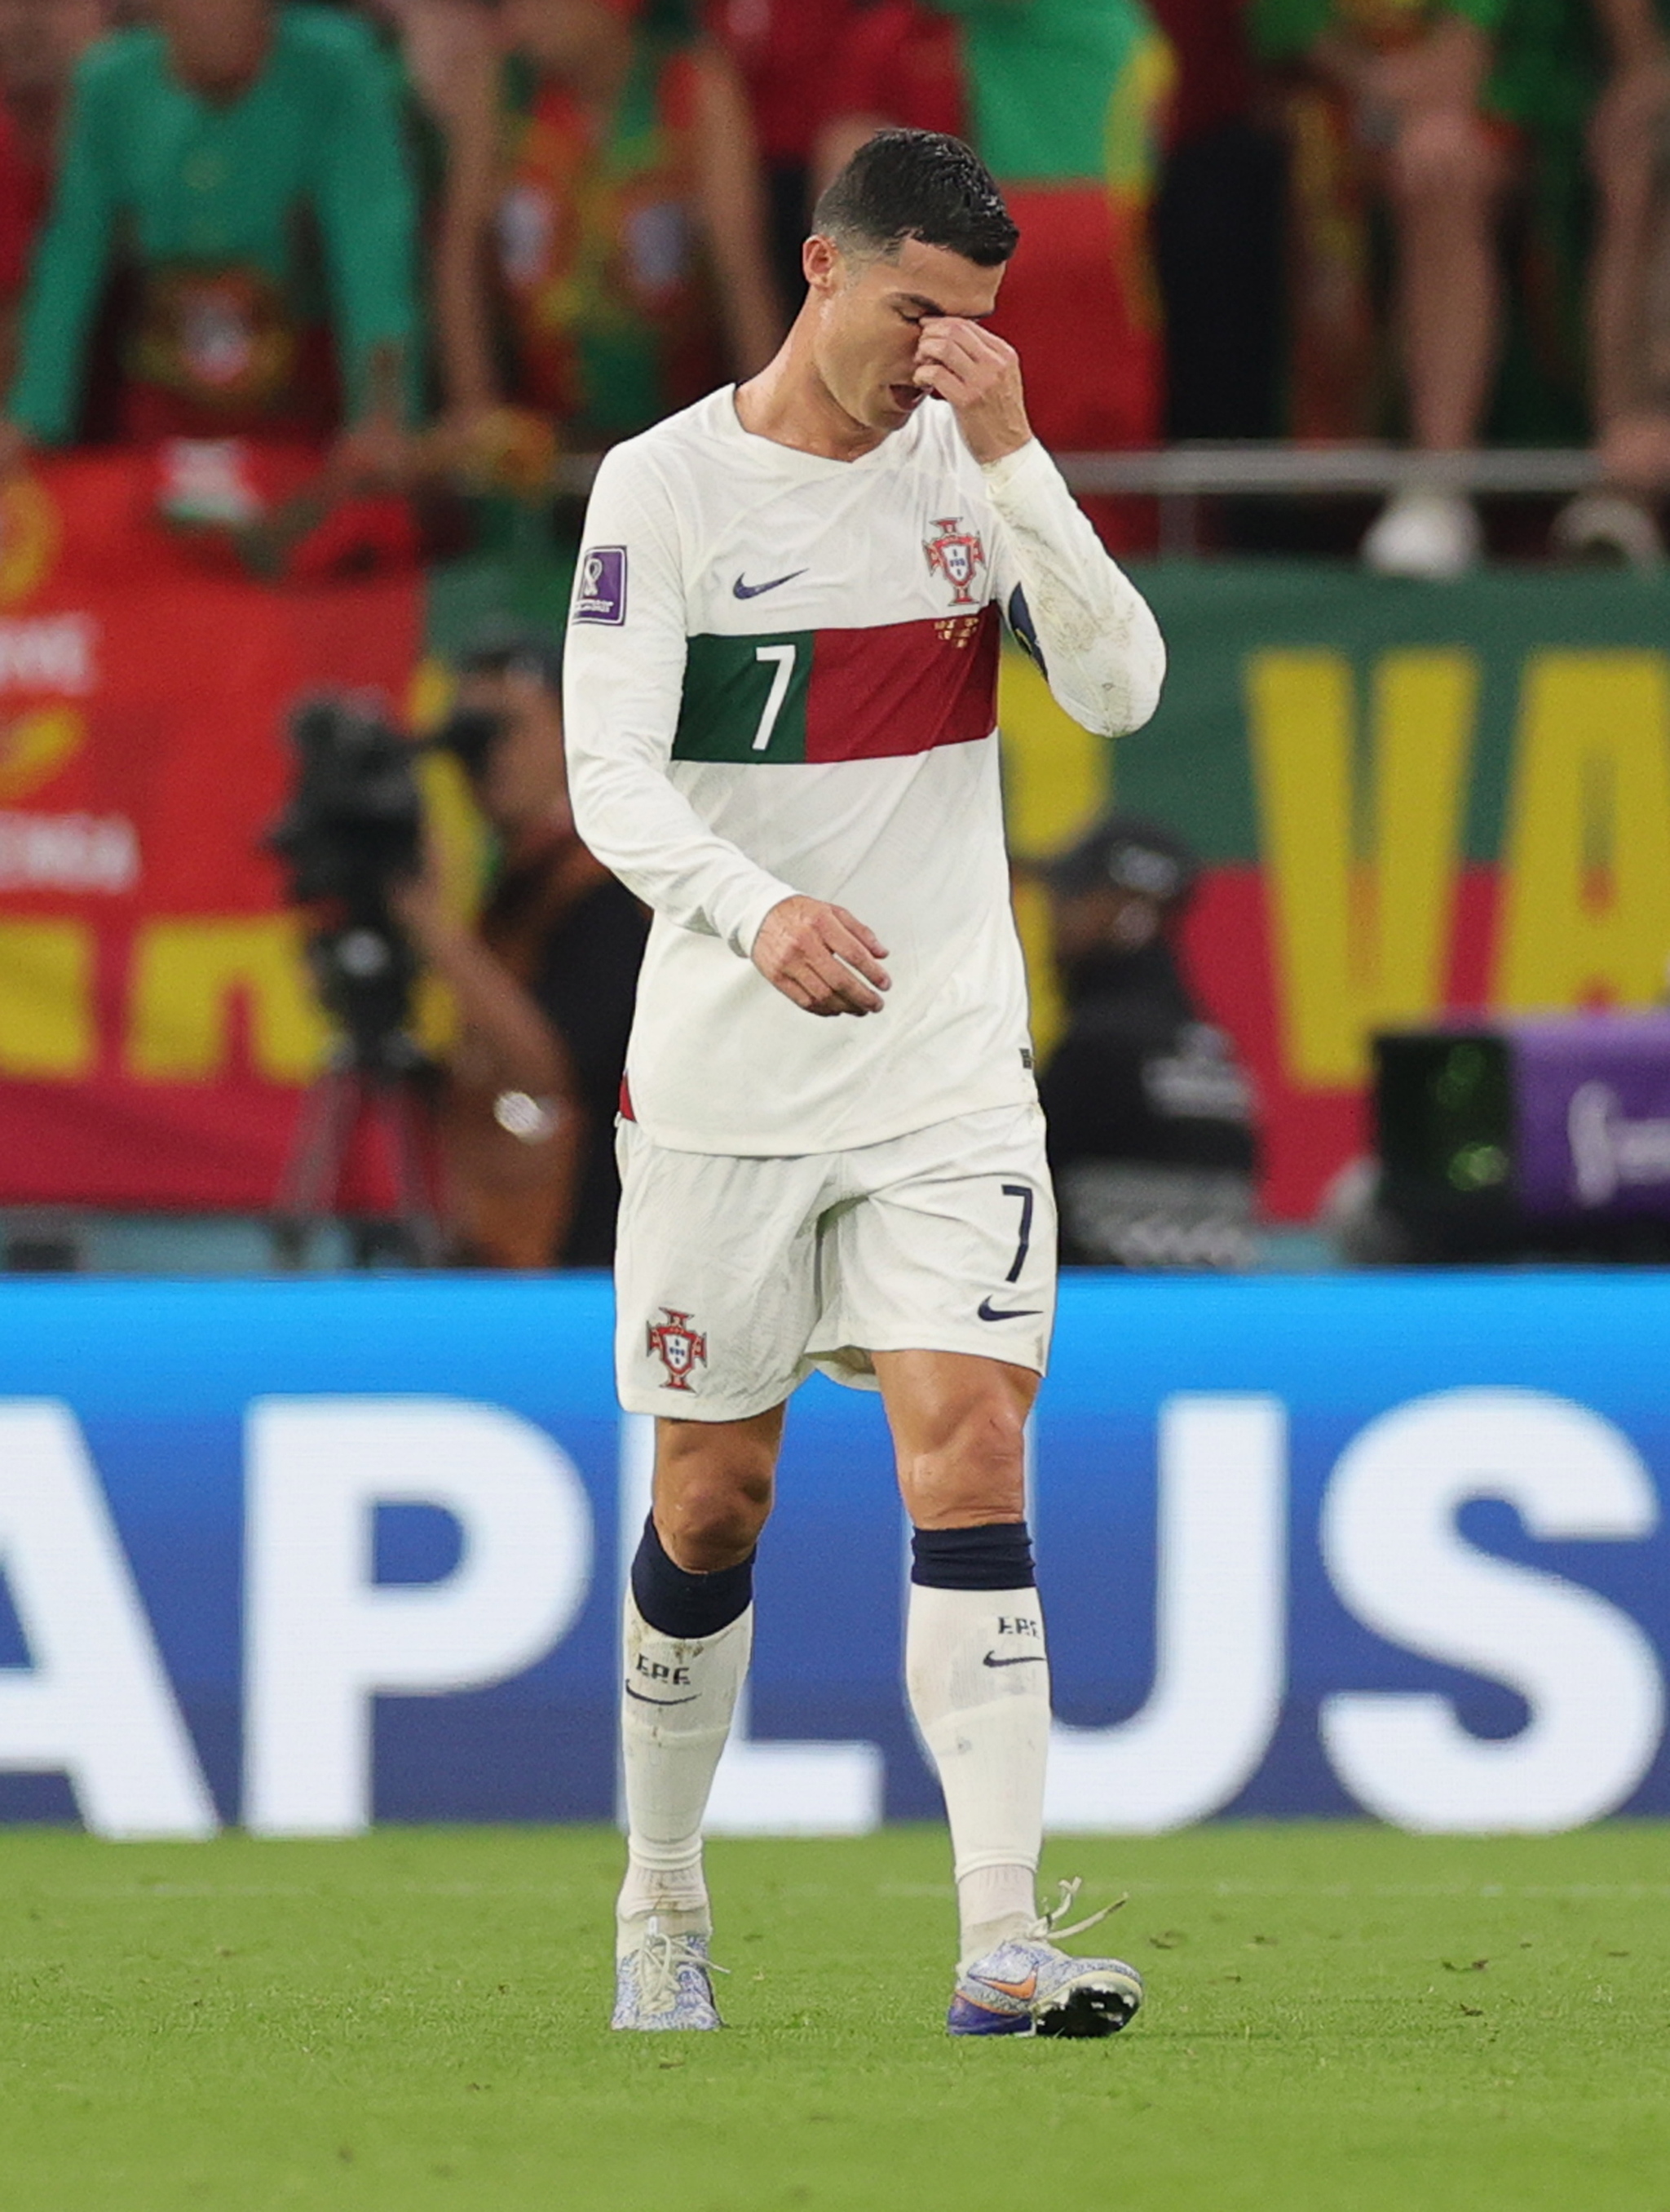 Fan của Ronaldo sẽ thật buồn khi thấy anh lấy tay che khuôn mặt, không kìm được nước mắt. Nhưng hãy cùng xem hình ảnh anh với biểu cảm tự tin và hạnh phúc để tạm quên đi những phút khó khăn này. Sự nỗ lực và đam mê bóng đá của anh vẫn luôn đáng khâm phục!